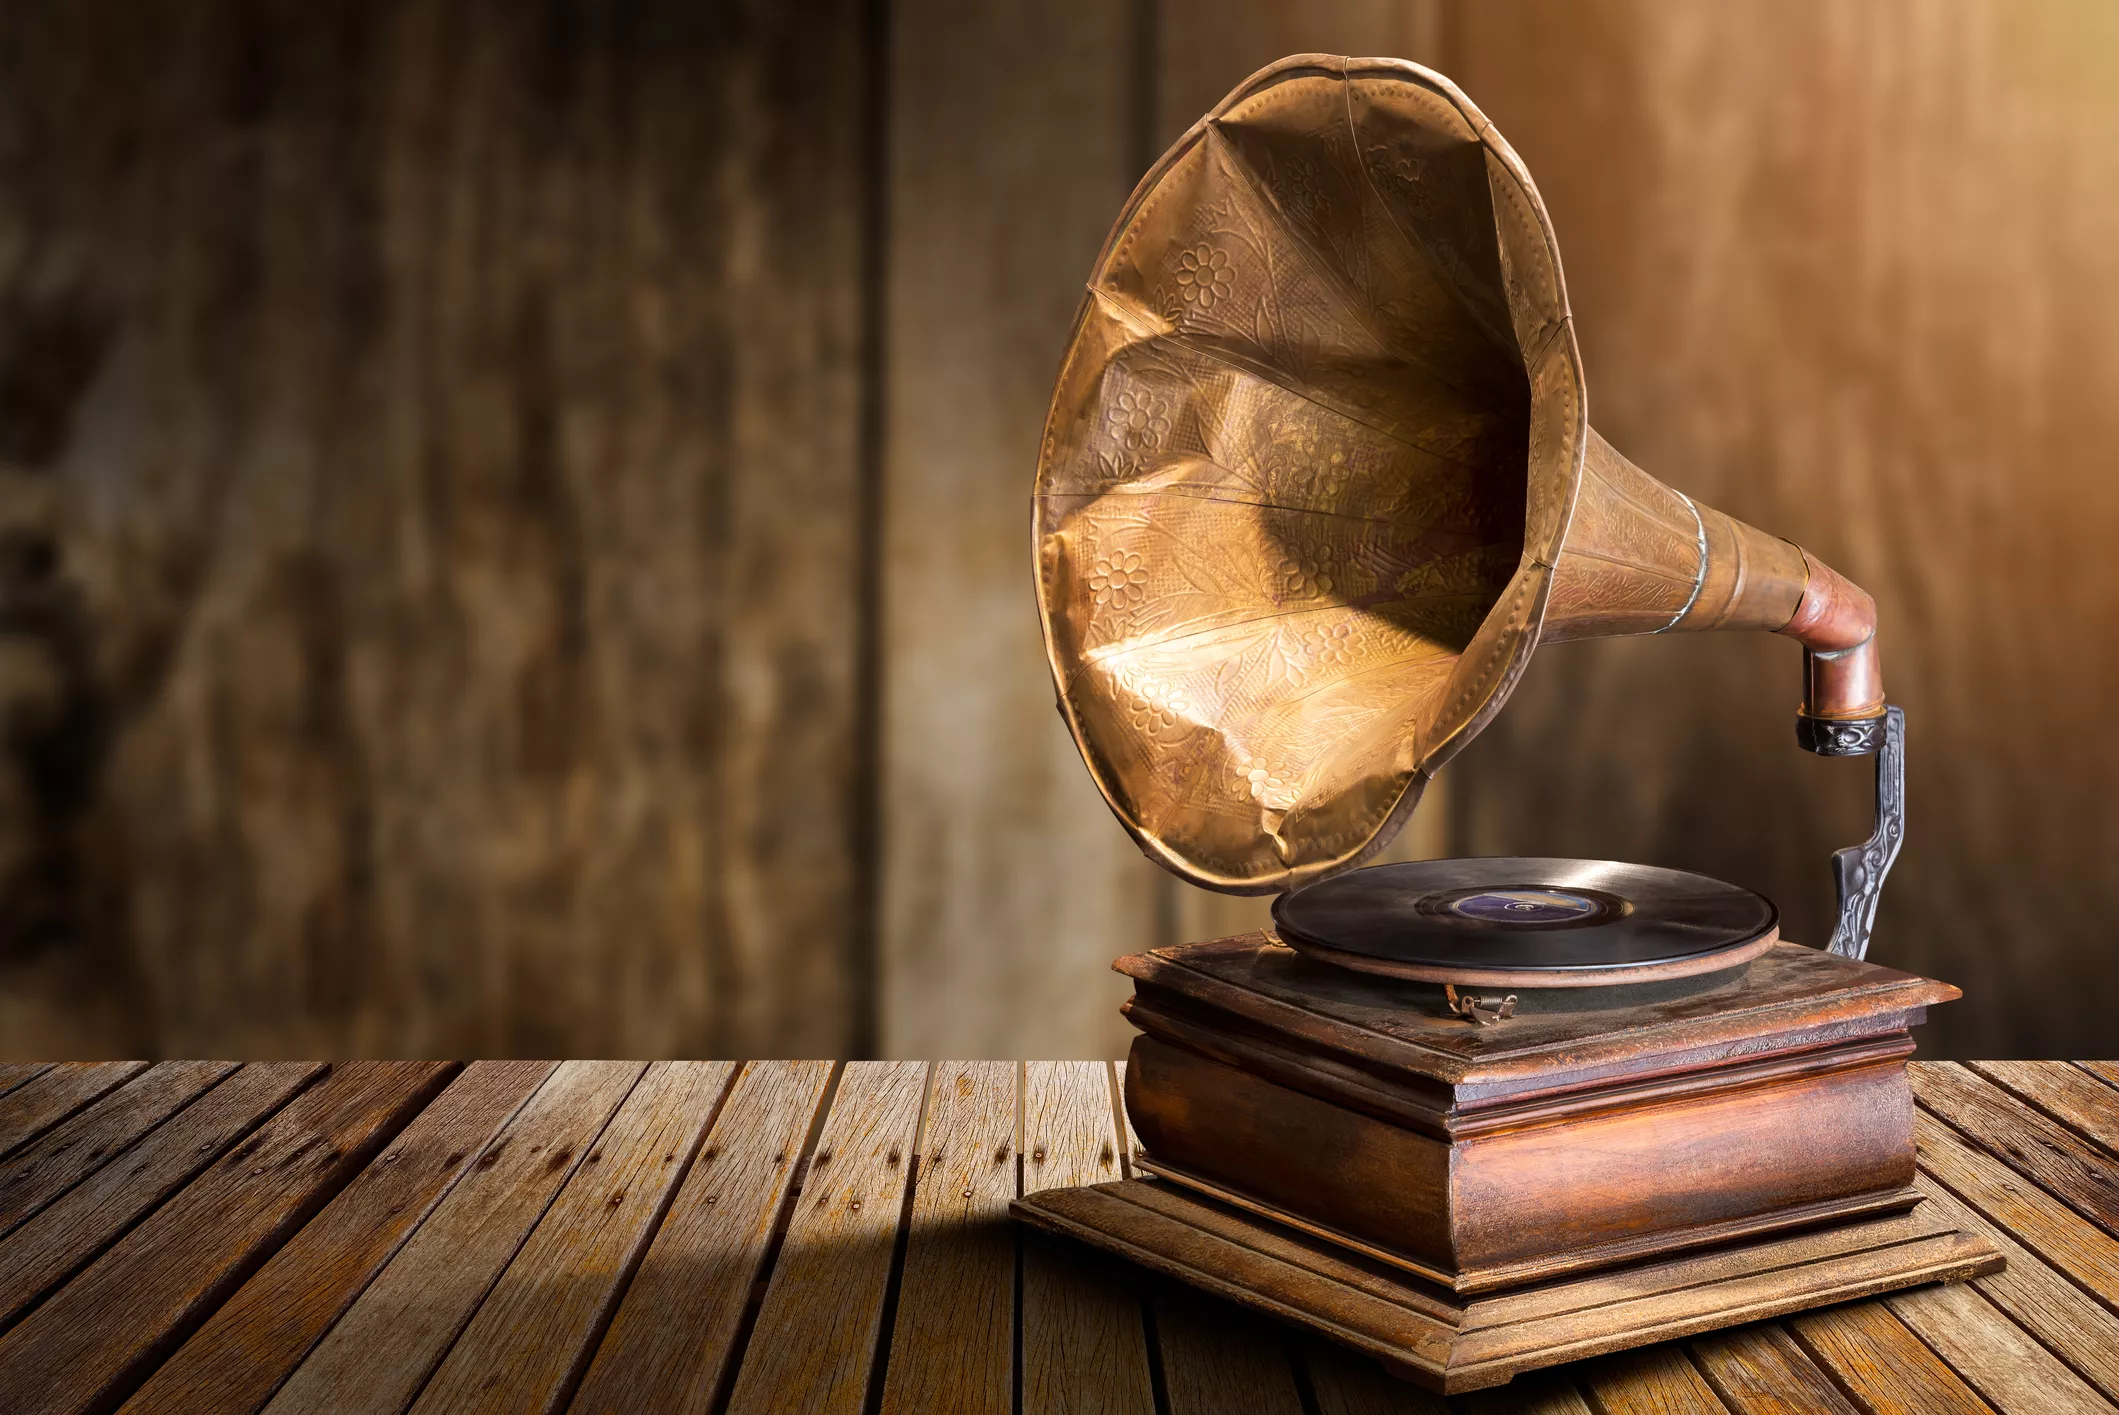 Tot i que Edison va anunciar la invenció del fonògraf, la proesa va ser de l’impressor francès Édouard-Léon Scott de Martinville